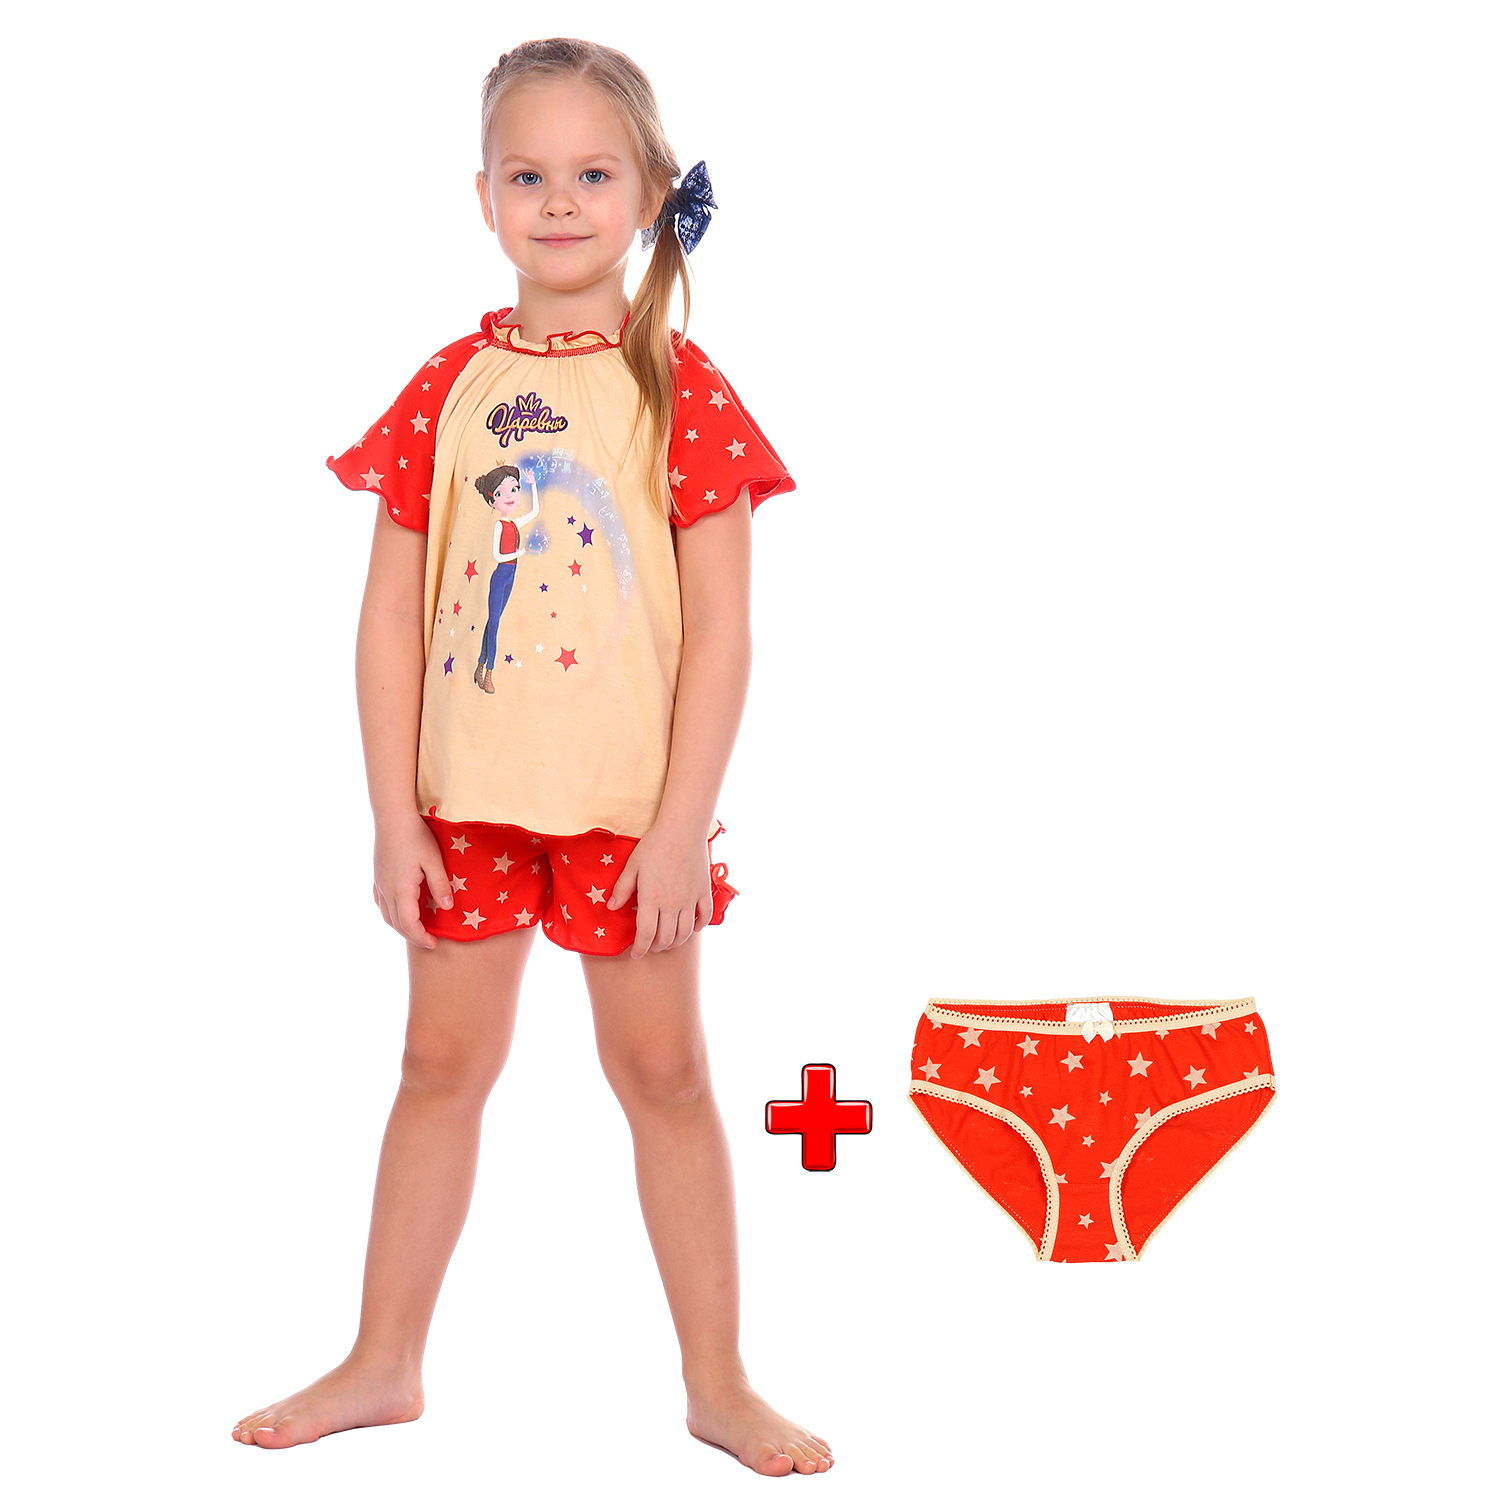 Пижама Детская Одежда S0412К/молочный_красный - фото 2